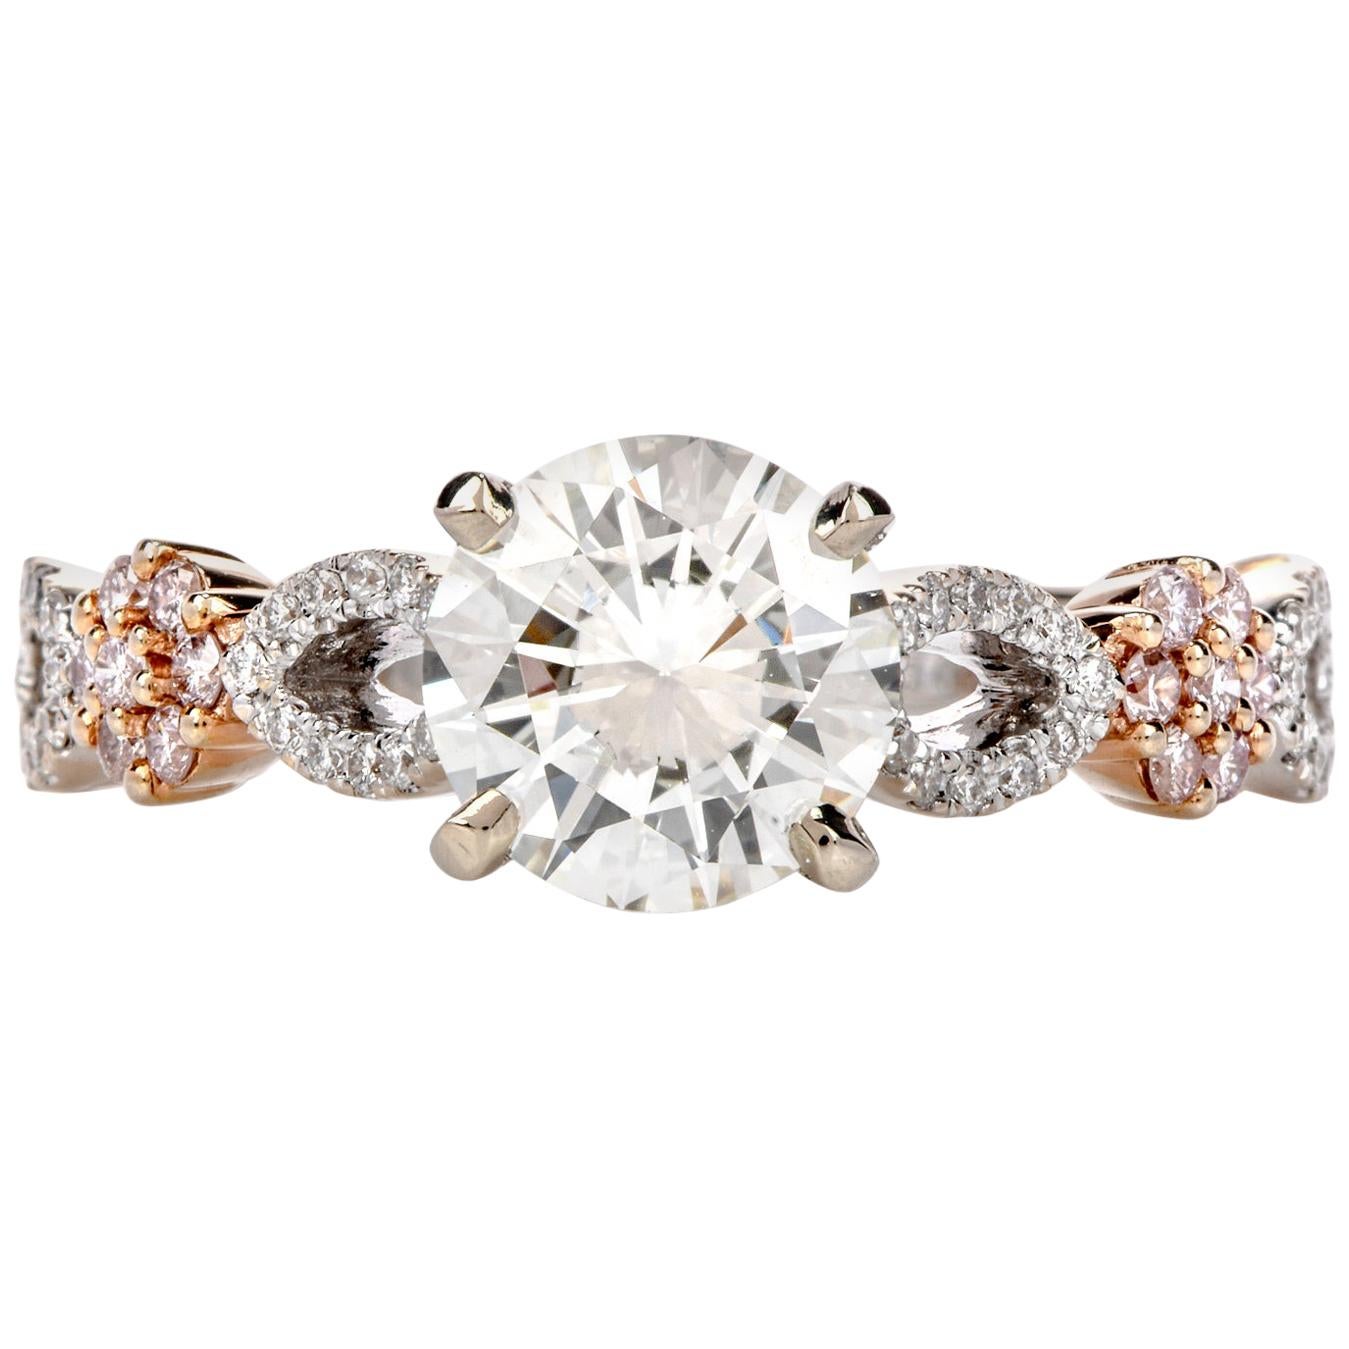 Hidalgo GIA 1.20 Carat White and Pink Diamond 18 Karat Gold Engagement Ring